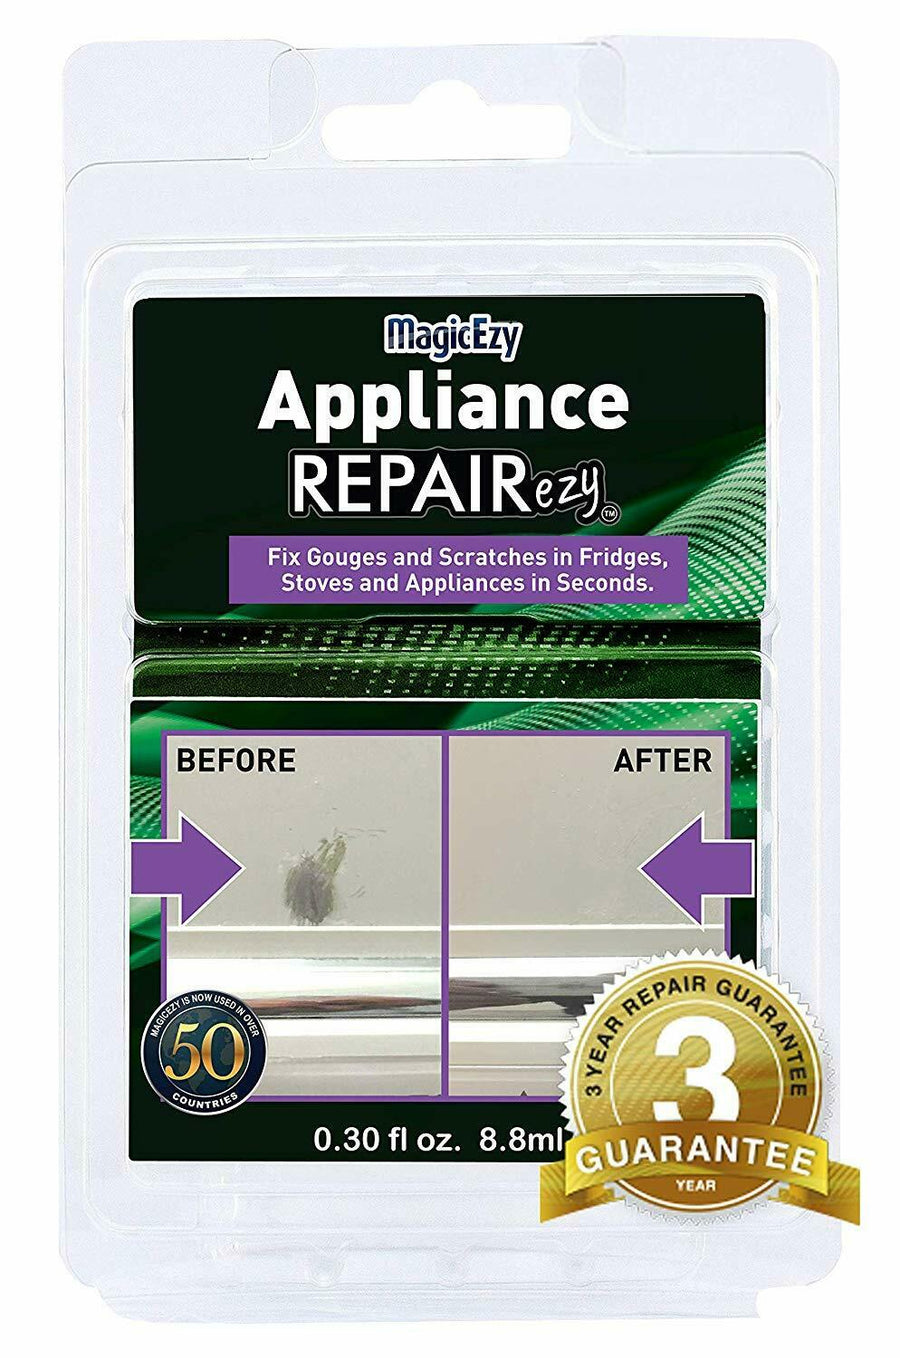 Appliance REPAIREZY™ - MagicEzy AU